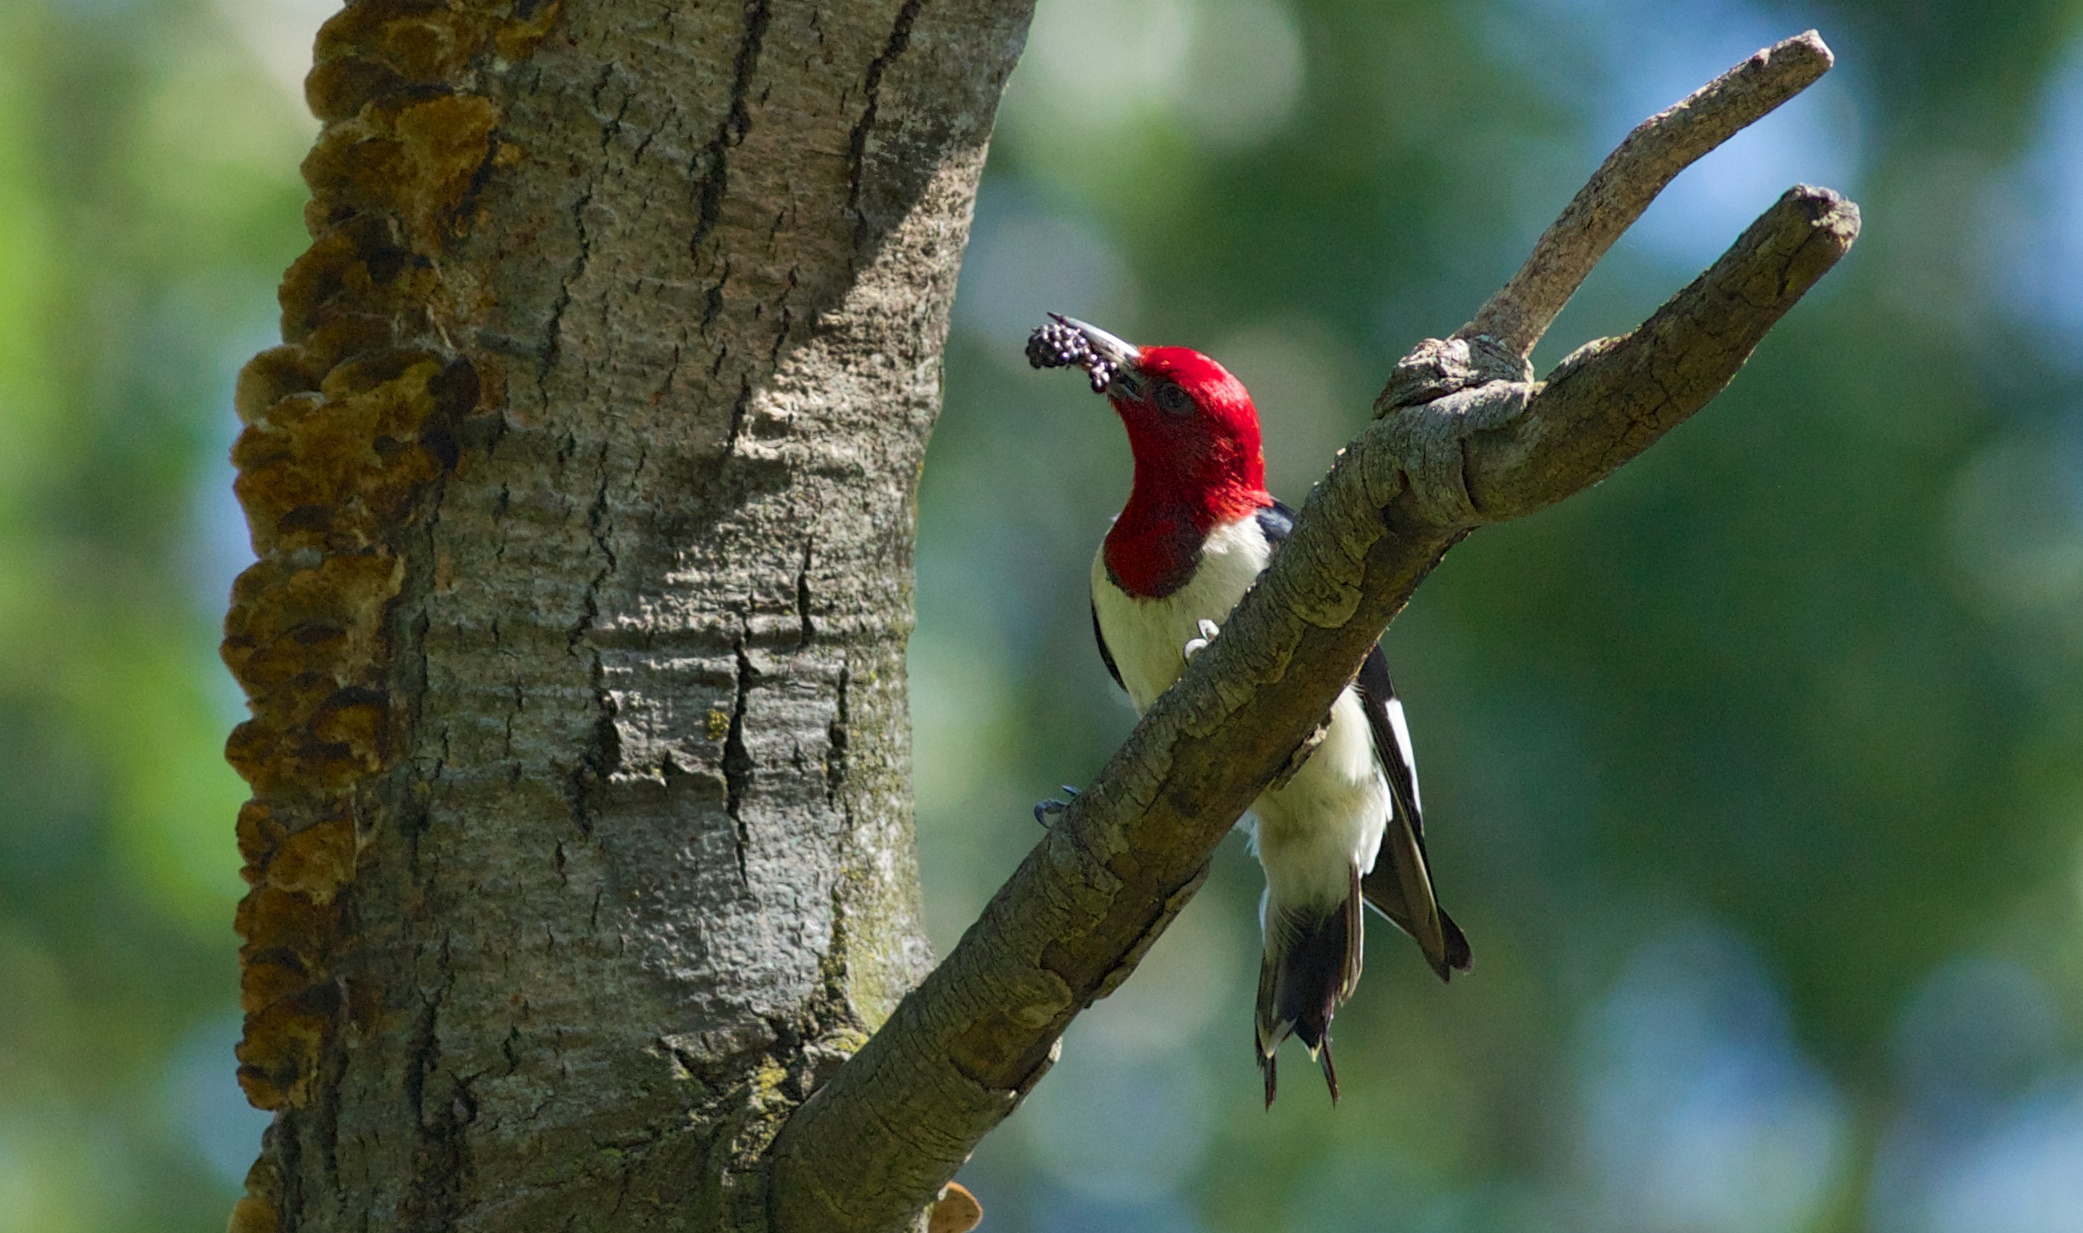   Red-headed woodpecker, photo by Arlene Koziol  